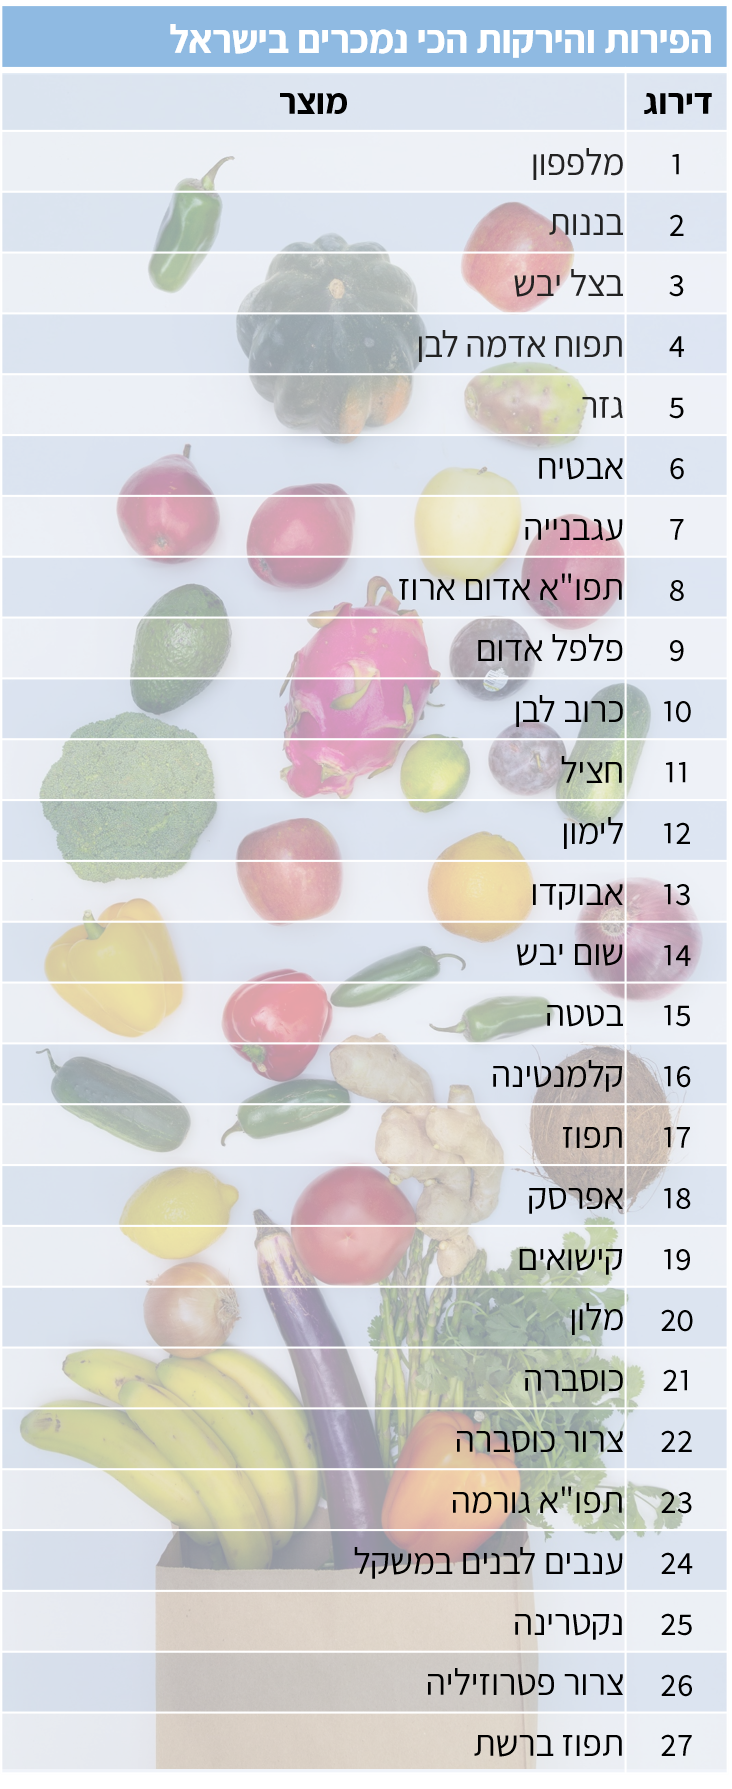 רשימת הפירות והירקות הנמכרים ביותר בסופר בישראל